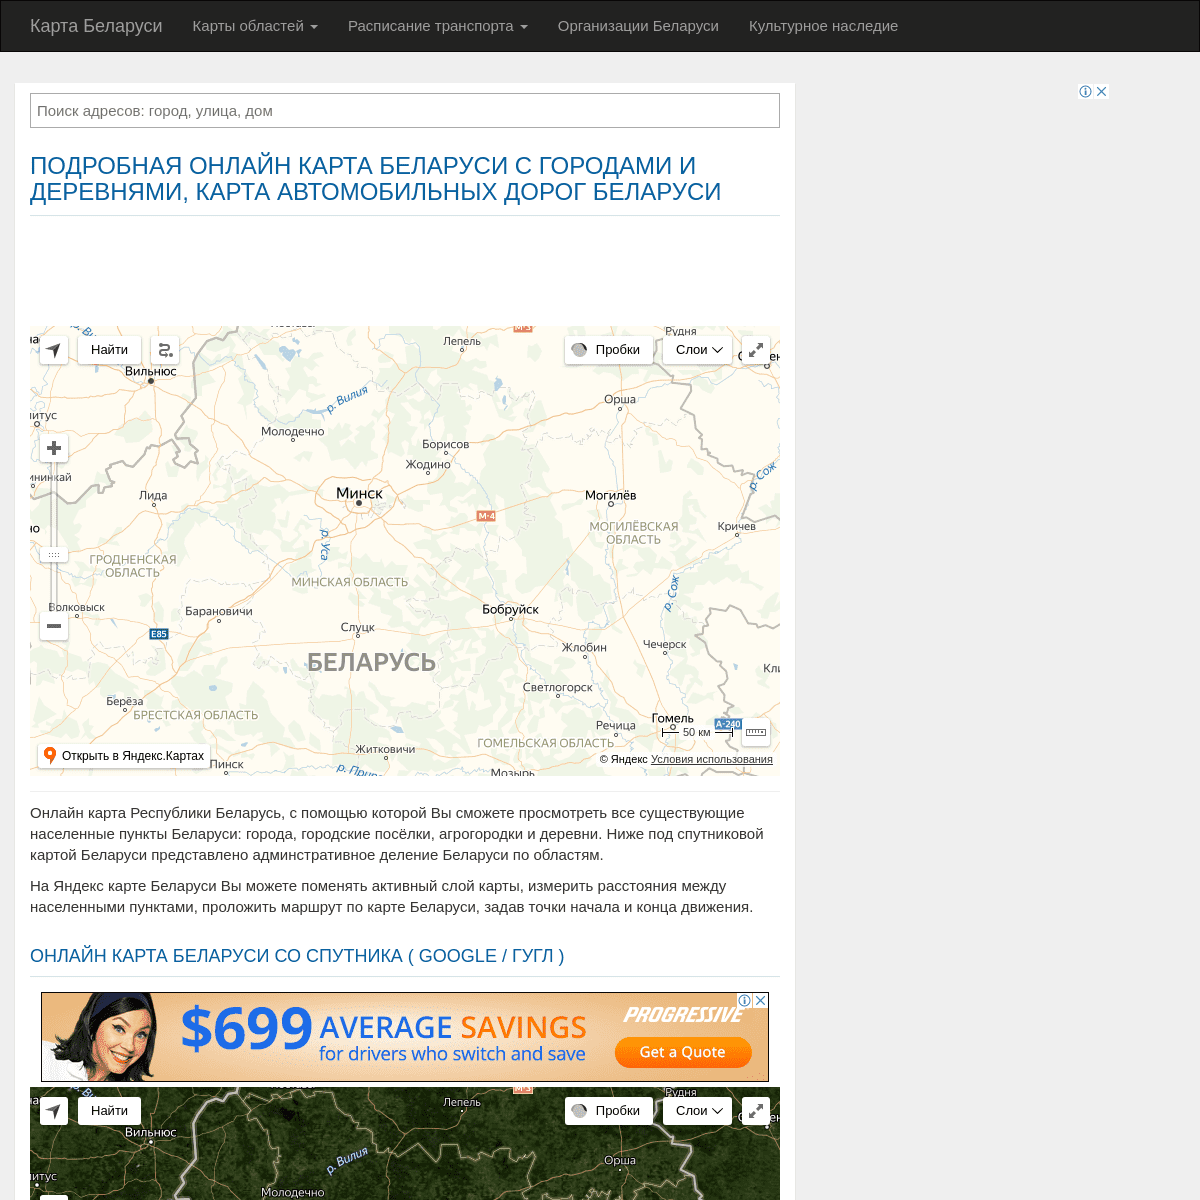 Подробная карта Беларуси бесплатно, автомобильные дороги с расстояниями. спутниковая гугл карта Беларуси в реальном времени, ска